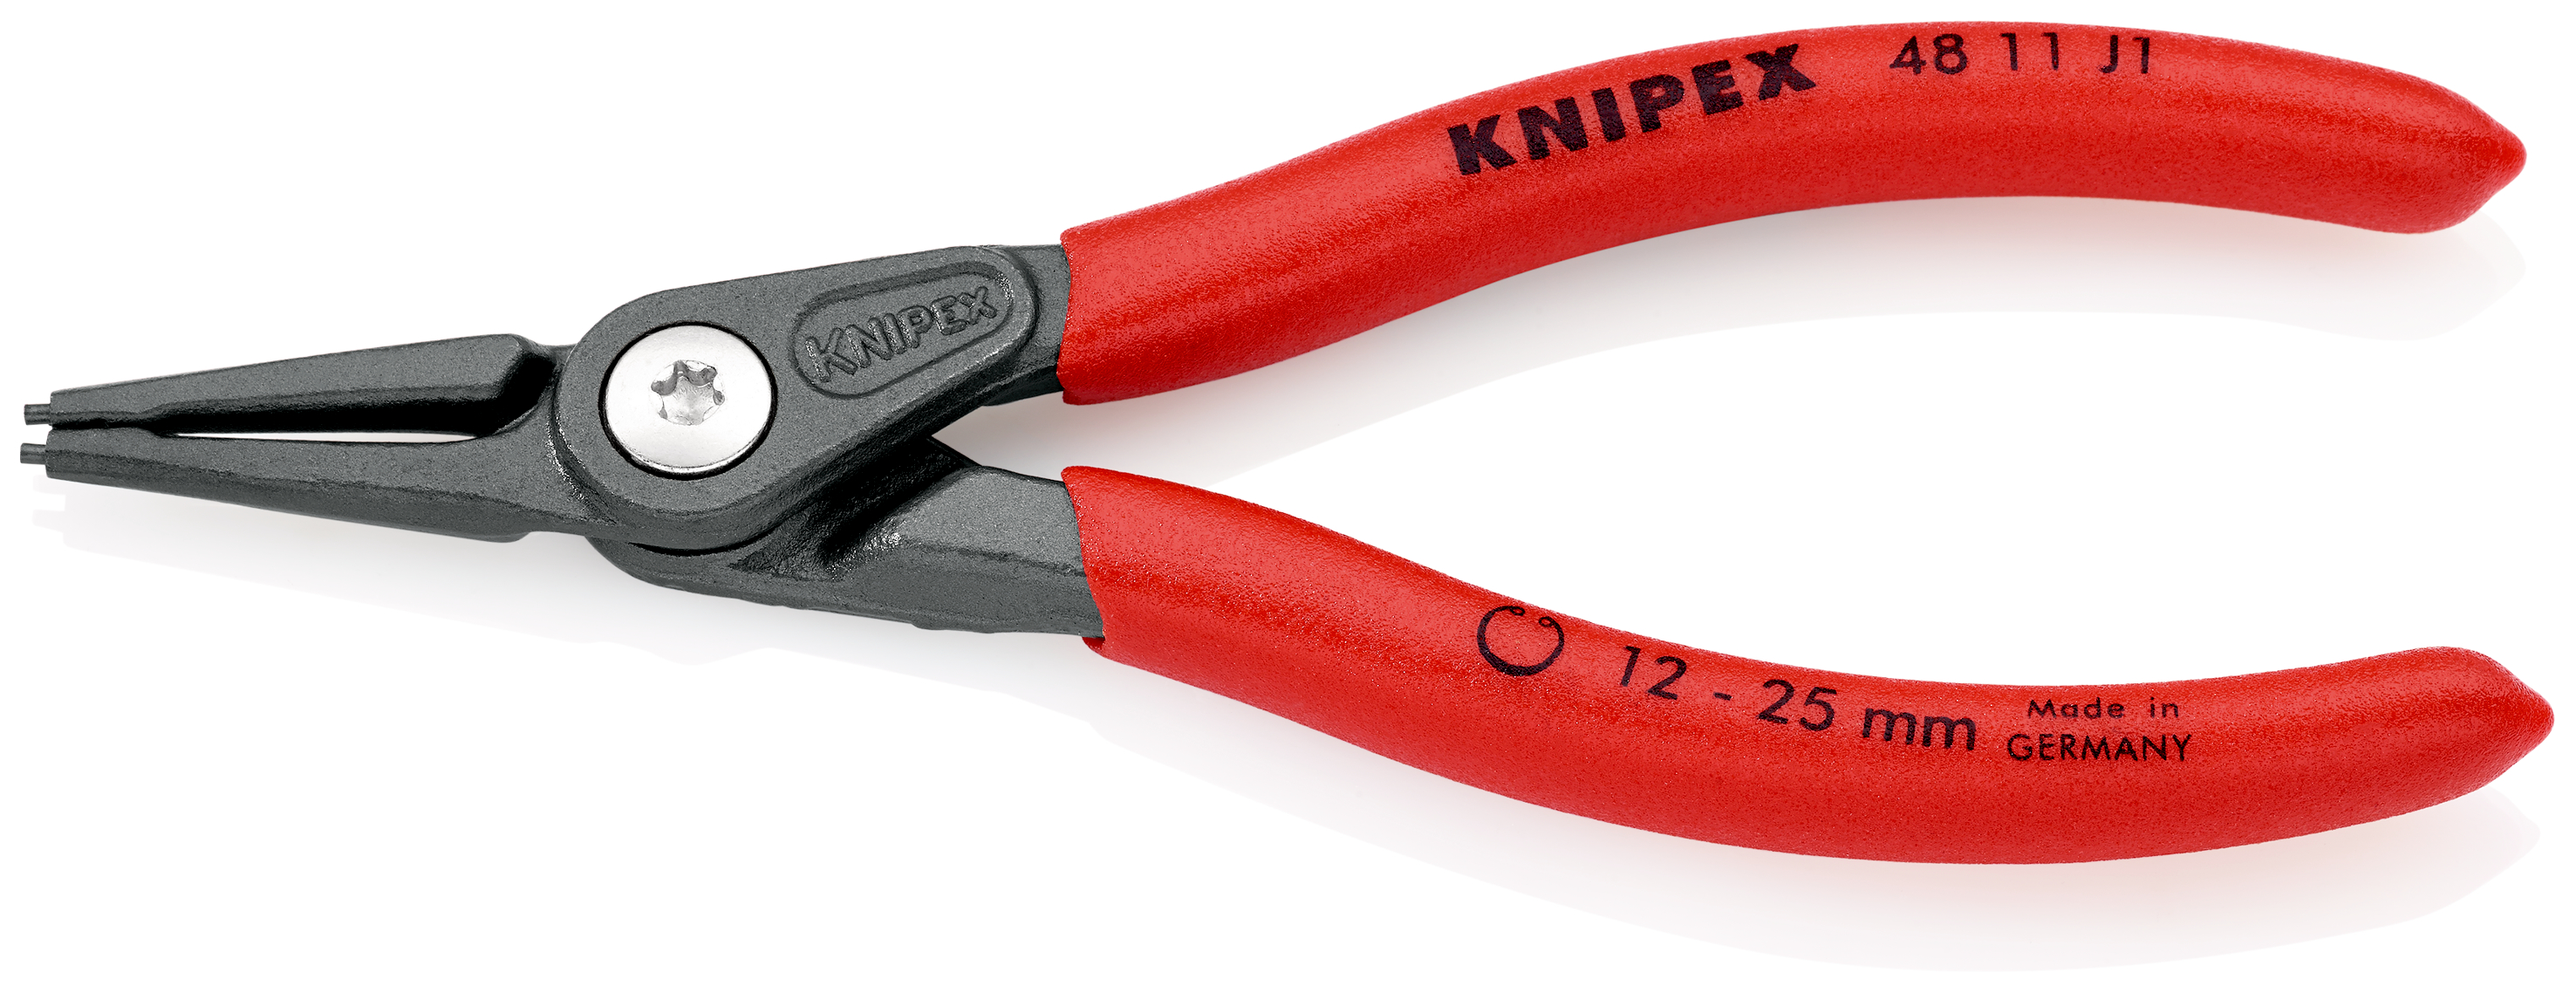 Knipex 4811J1 Cleste pentru inele de siguranta de interior, lungime 140 mm